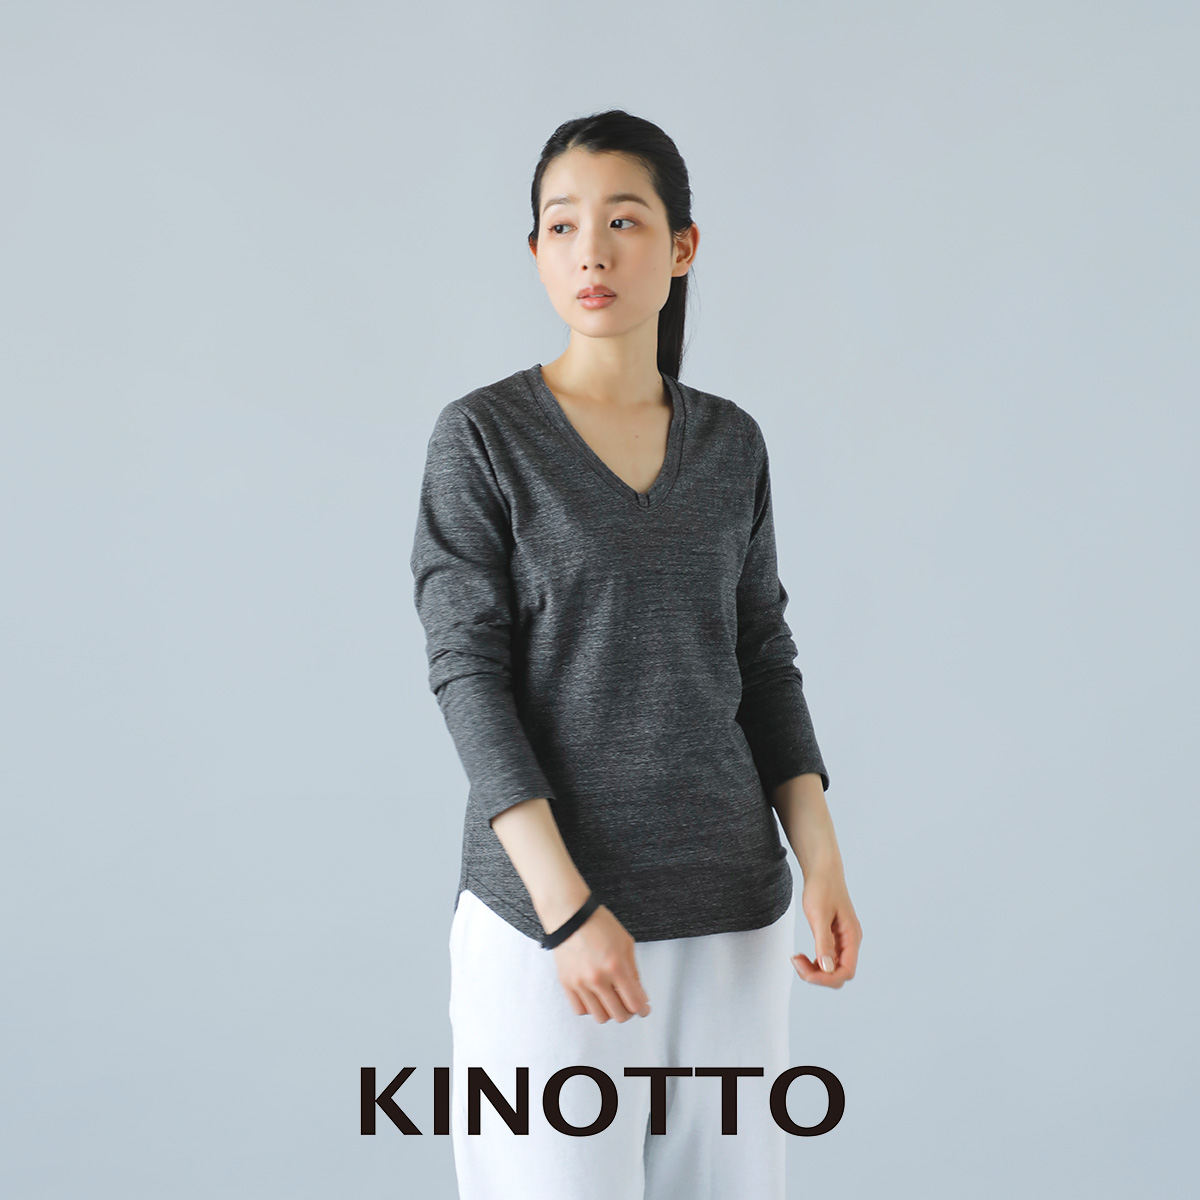 KINOTTO(キノット)タンギス綿 7分袖 ボートネック Tシャツ 2231c001